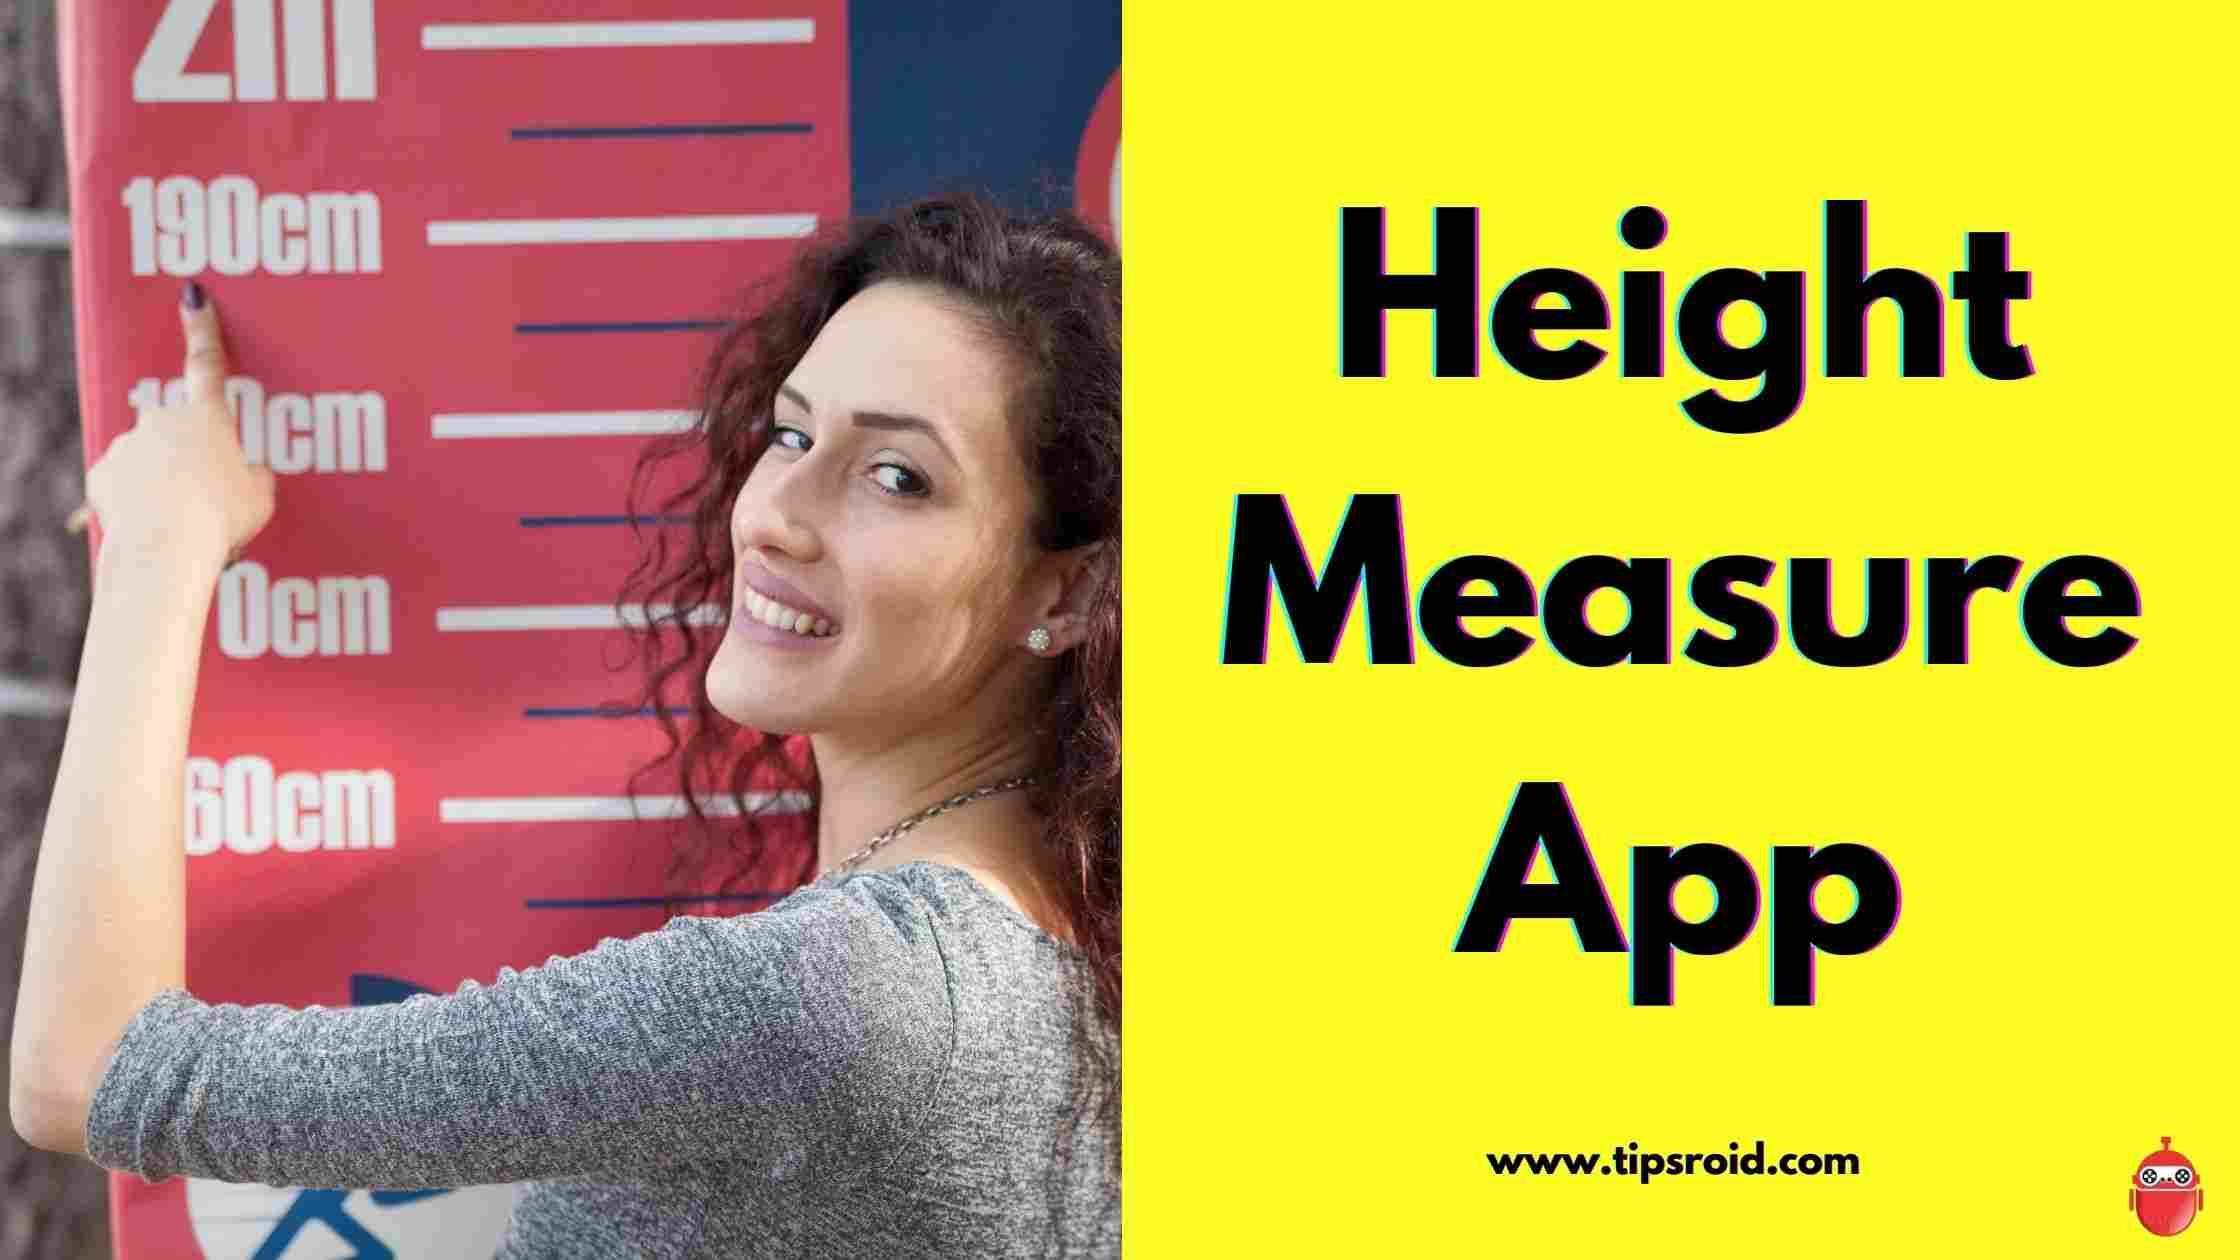 Height Measure App